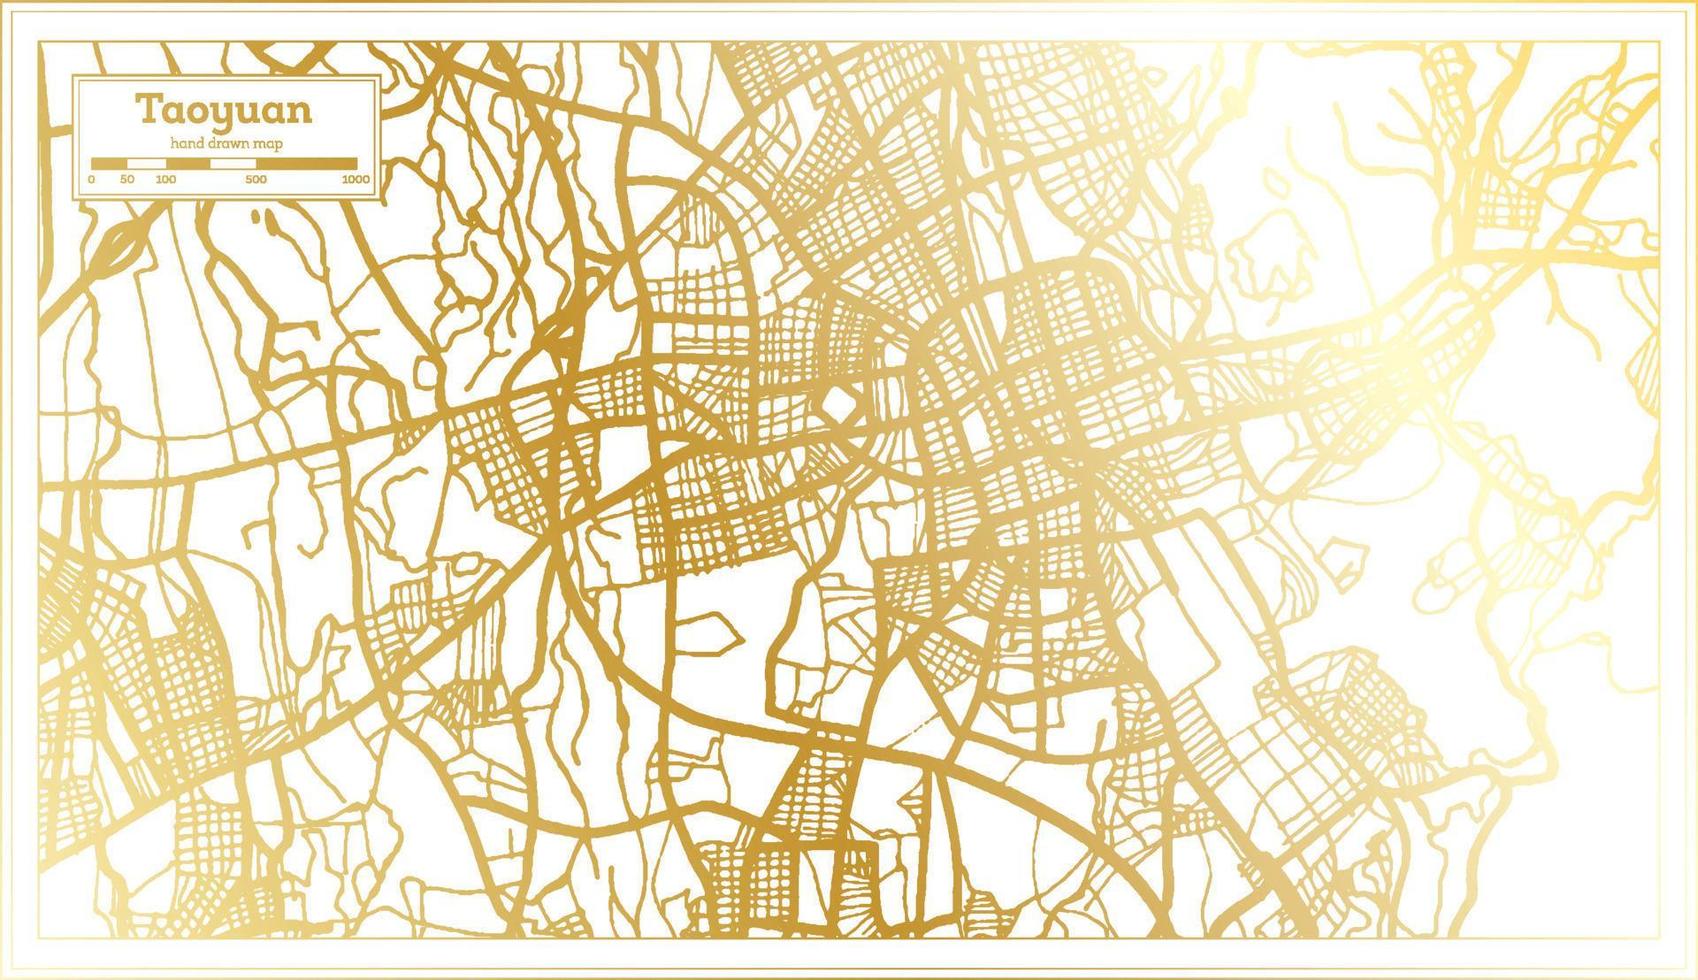 mapa da cidade de taoyuan taiwan em estilo retrô na cor dourada. mapa de contorno. vetor